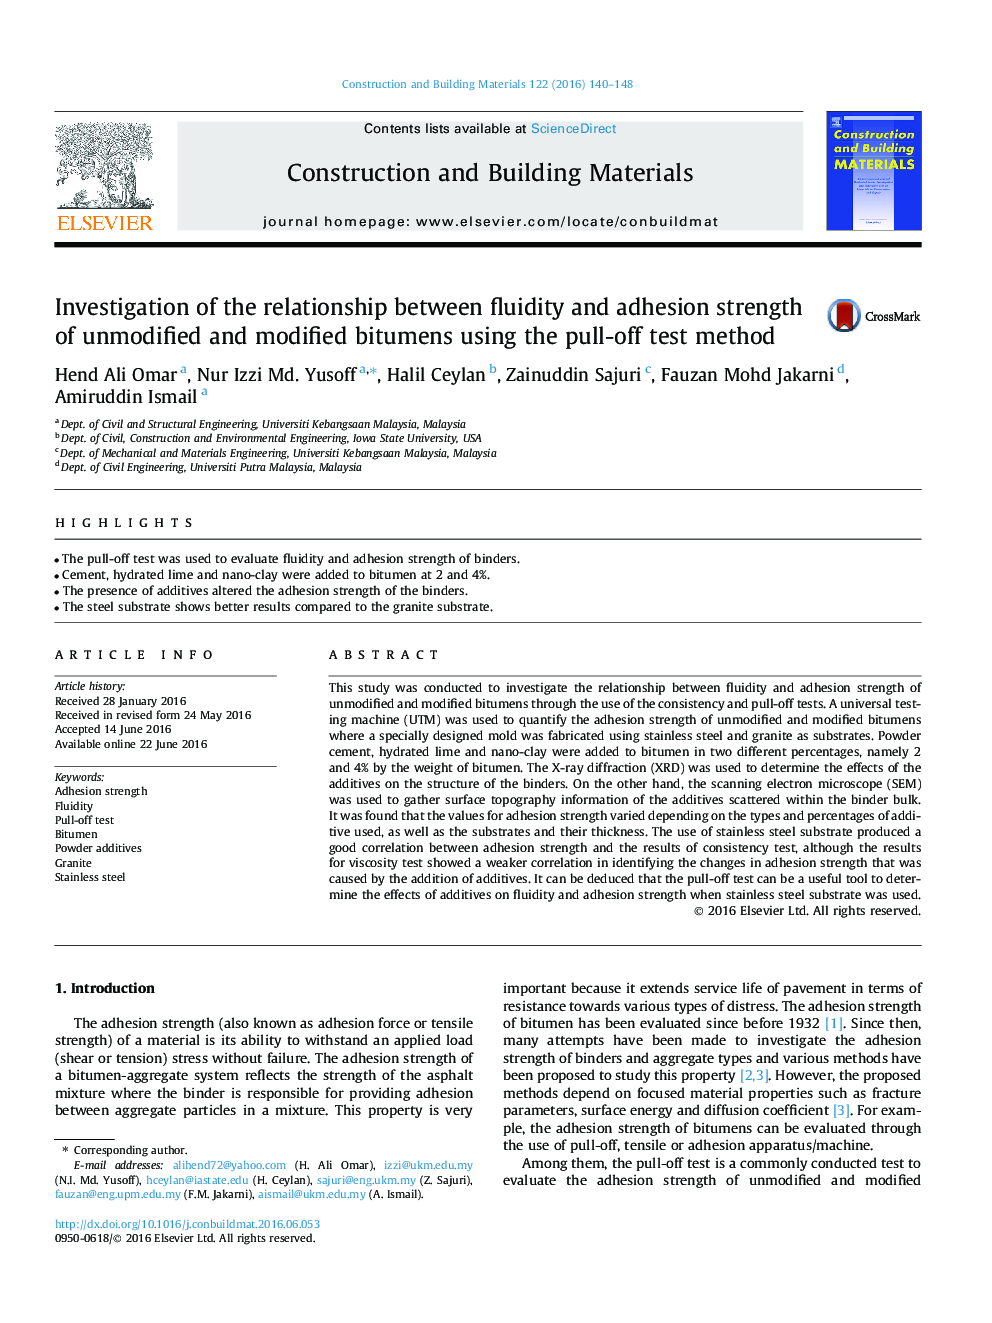 بررسی رابطه بین سیالیت و مقاومت چسبندگی بتمن های غیر اصلاح شده و اصلاح شده با استفاده از روش آزمون کشش 